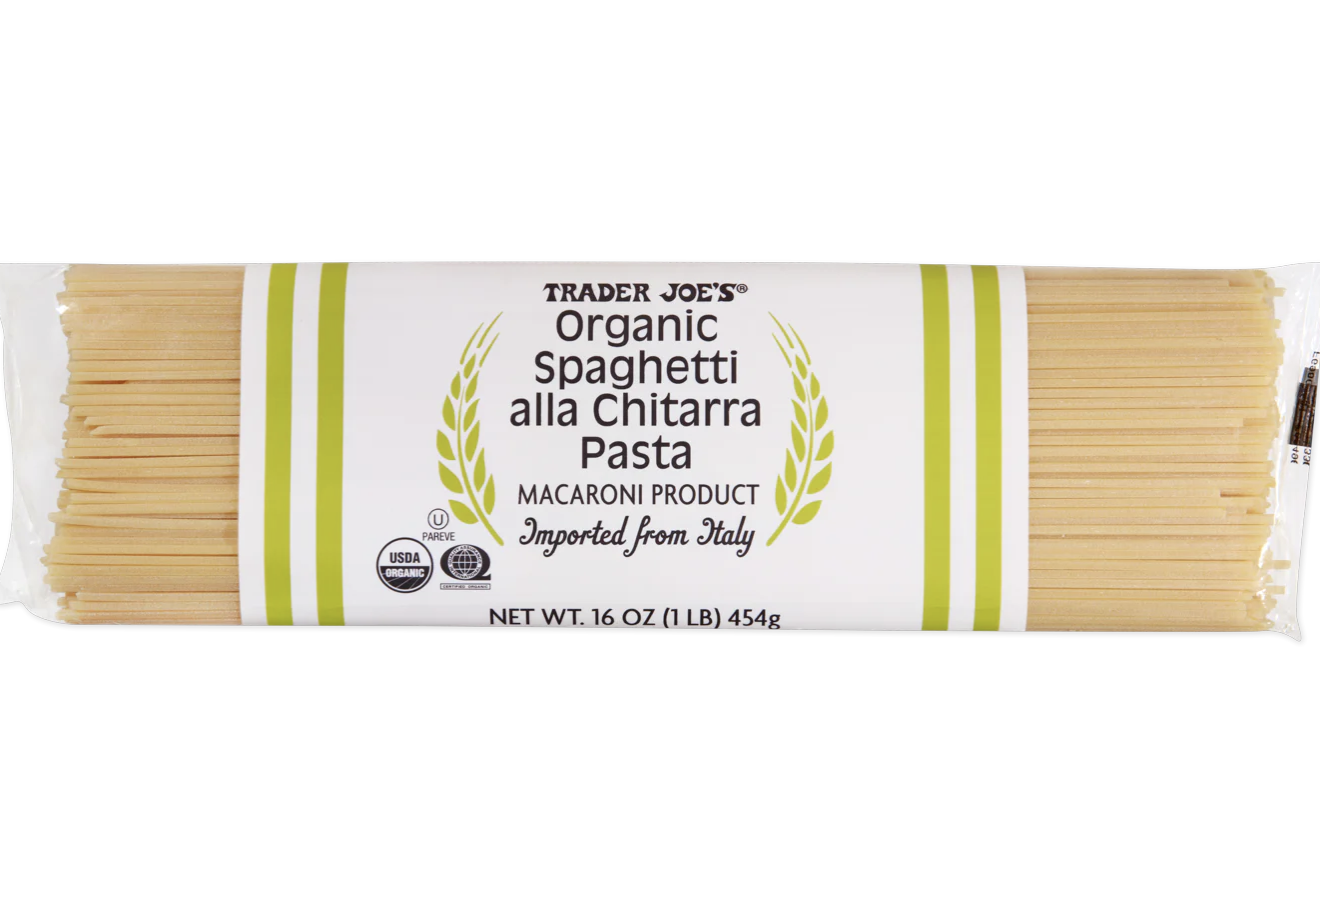 Trader Joe's Organic Spaghetti alla Chitarra Pasta